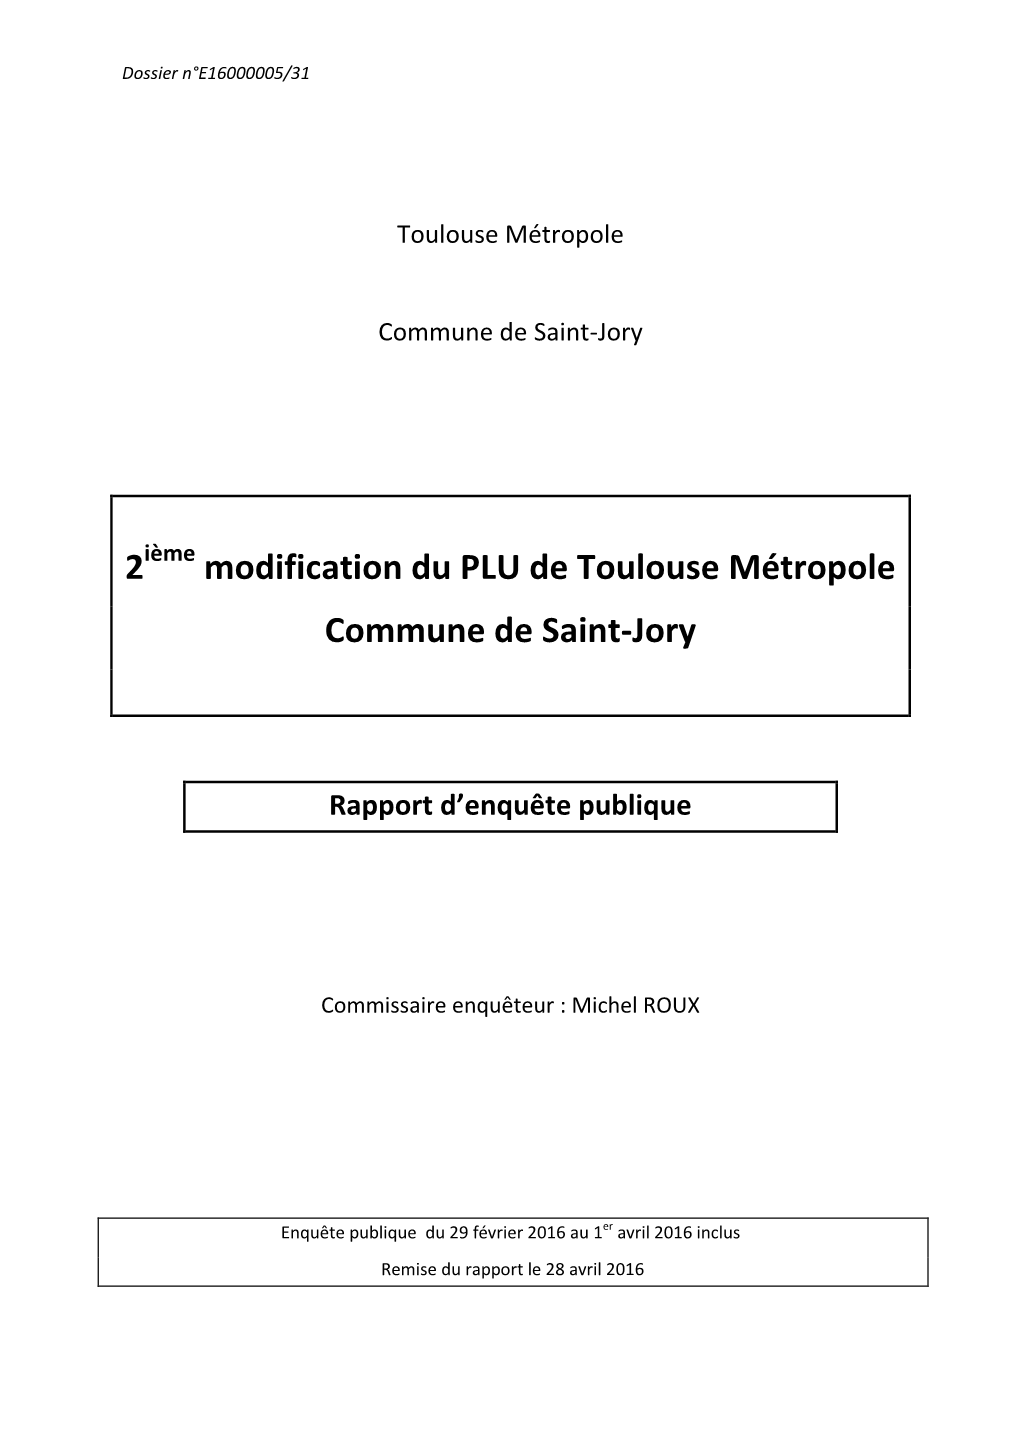 2 Modification Du PLU De Toulouse Métropole Commune De Saint-Jory